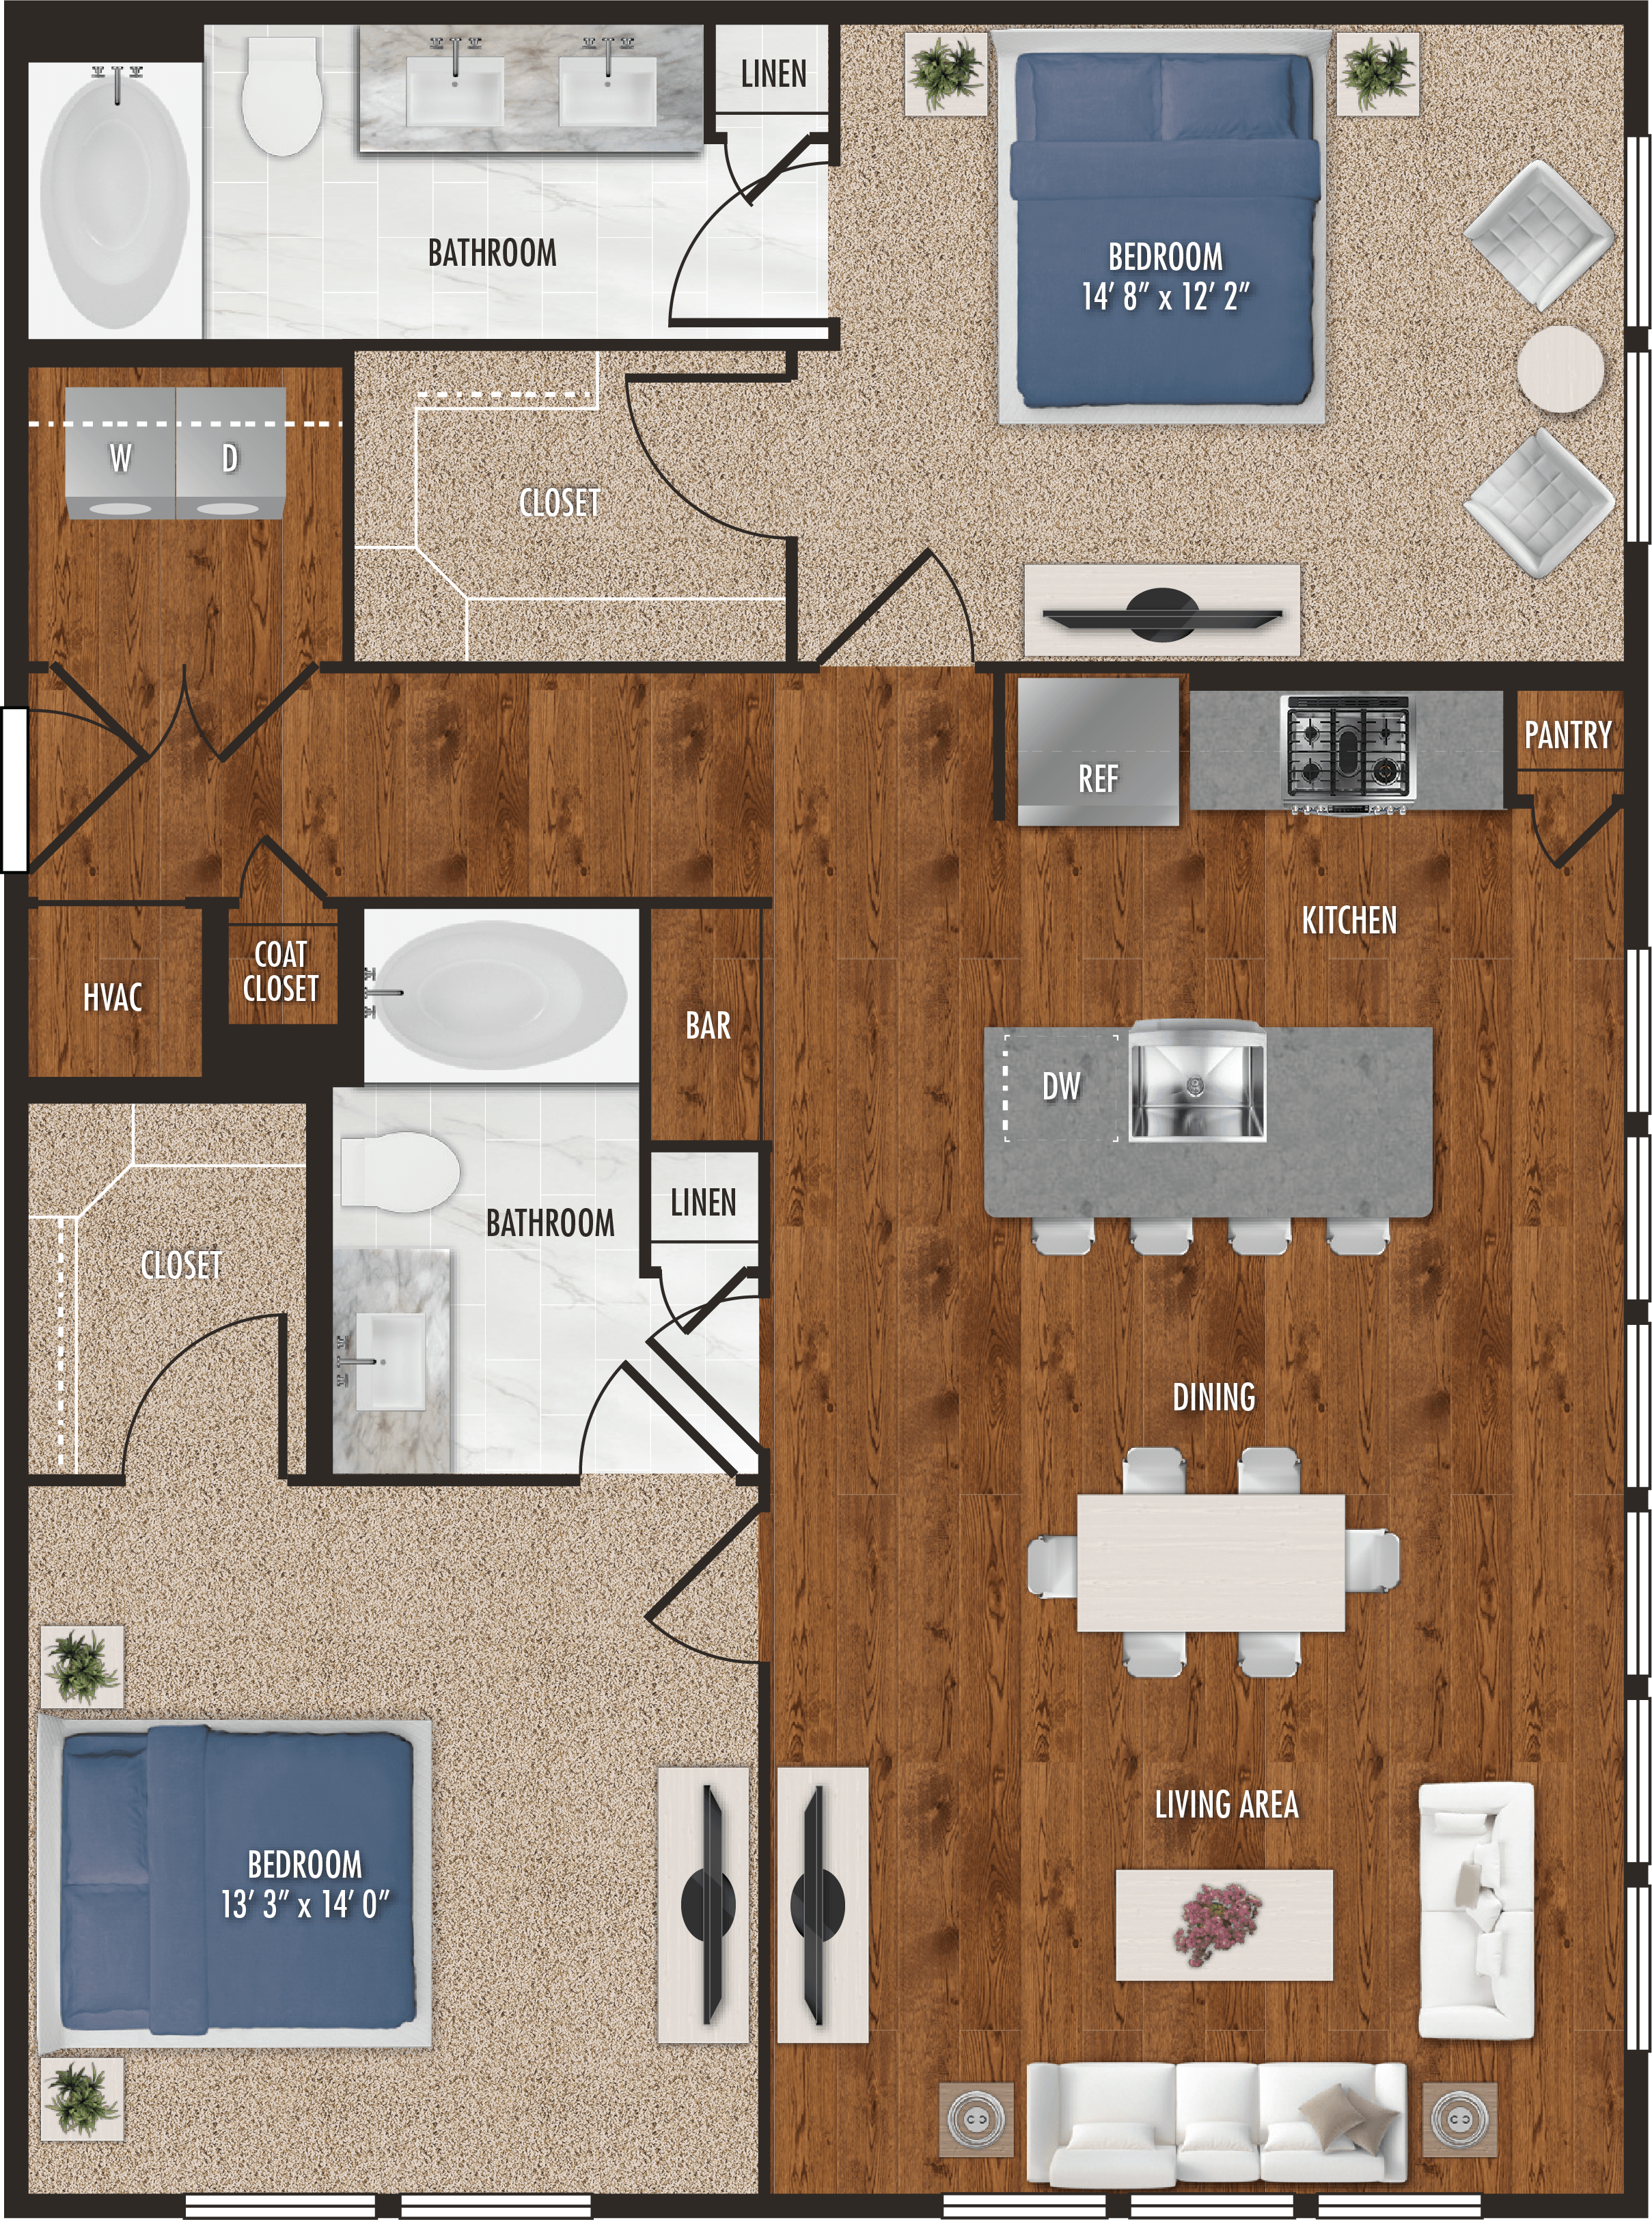 B2 - Two Bedroom Floor Plan for Alexan 5151